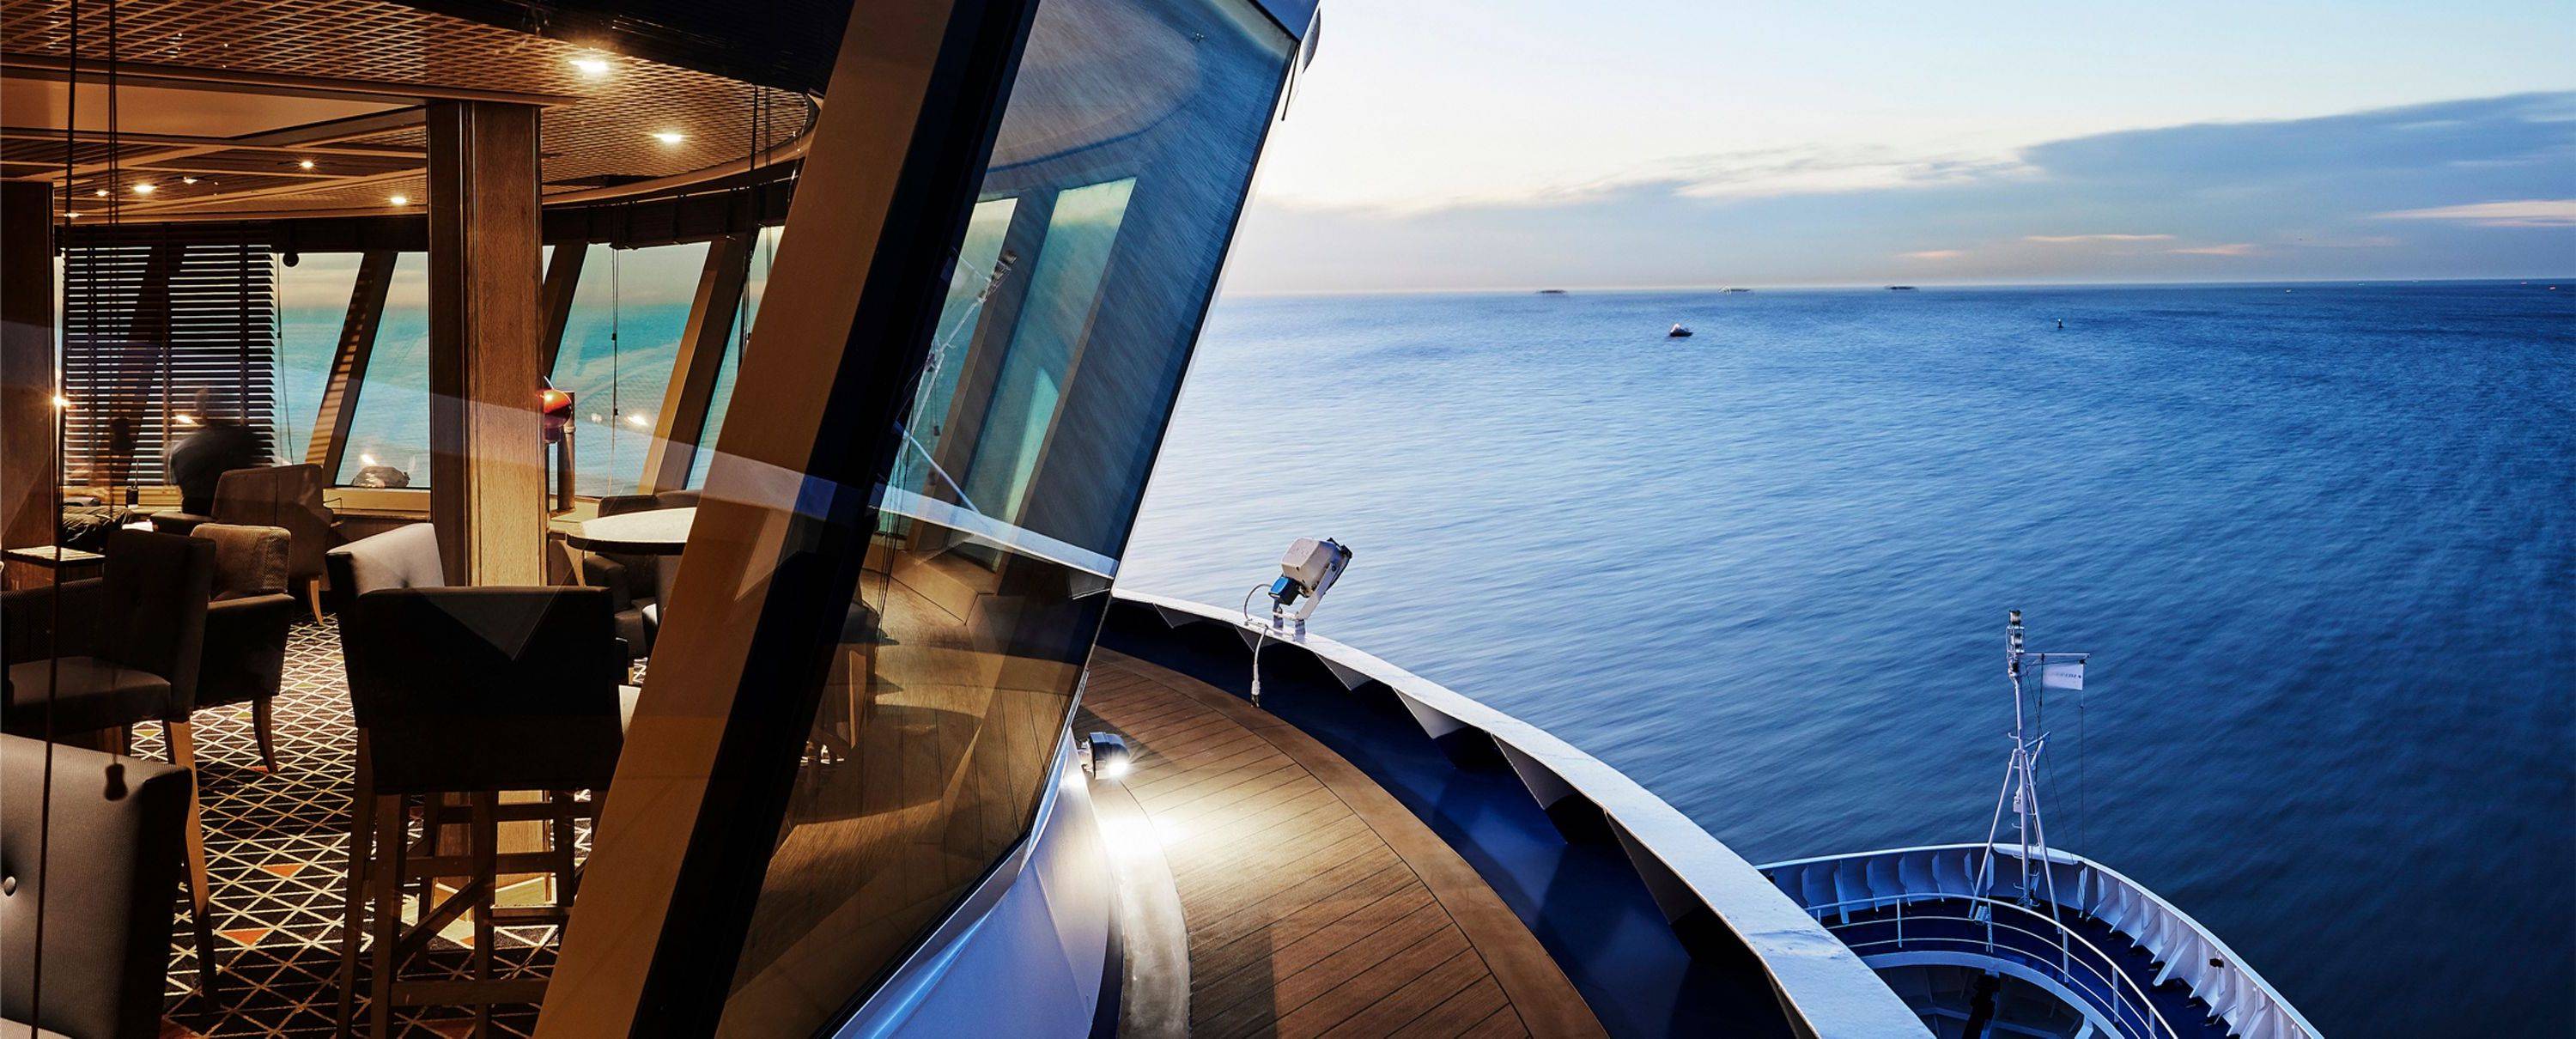 Intimate Luxury Cruise Ships